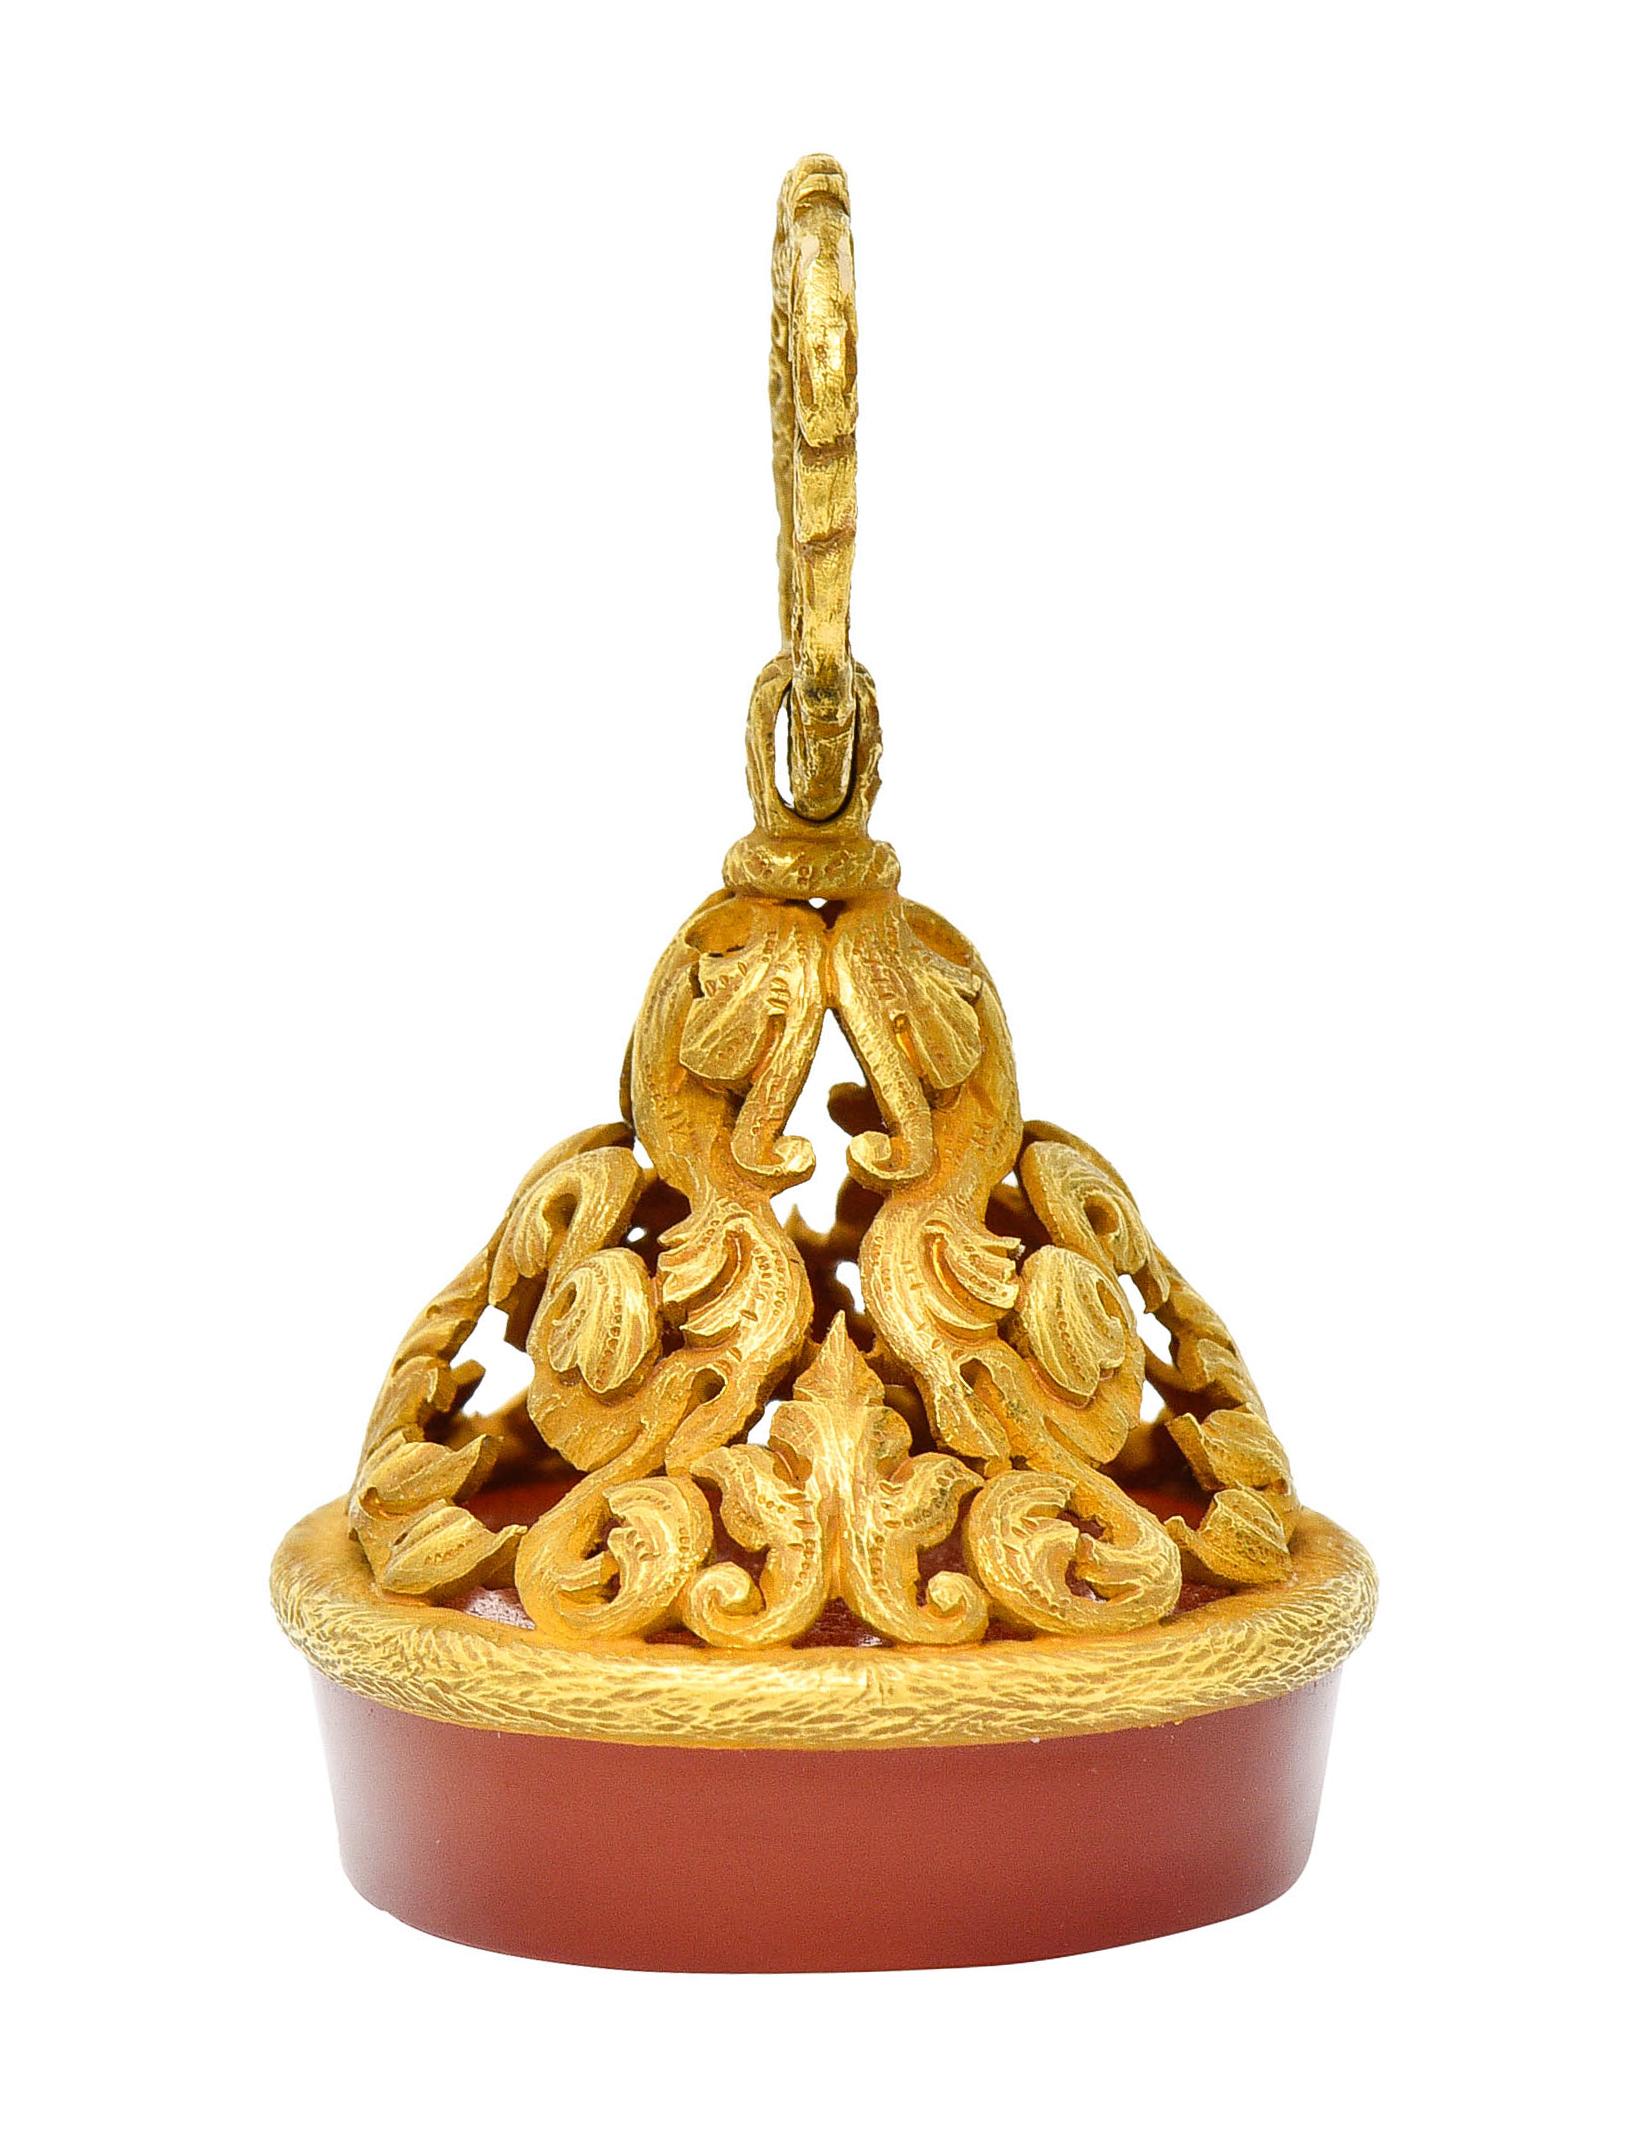 Oval Cut Large Art Nouveau Carnelian Intaglio 18 Karat Gold Whiplash Heraldry Fob Pendant